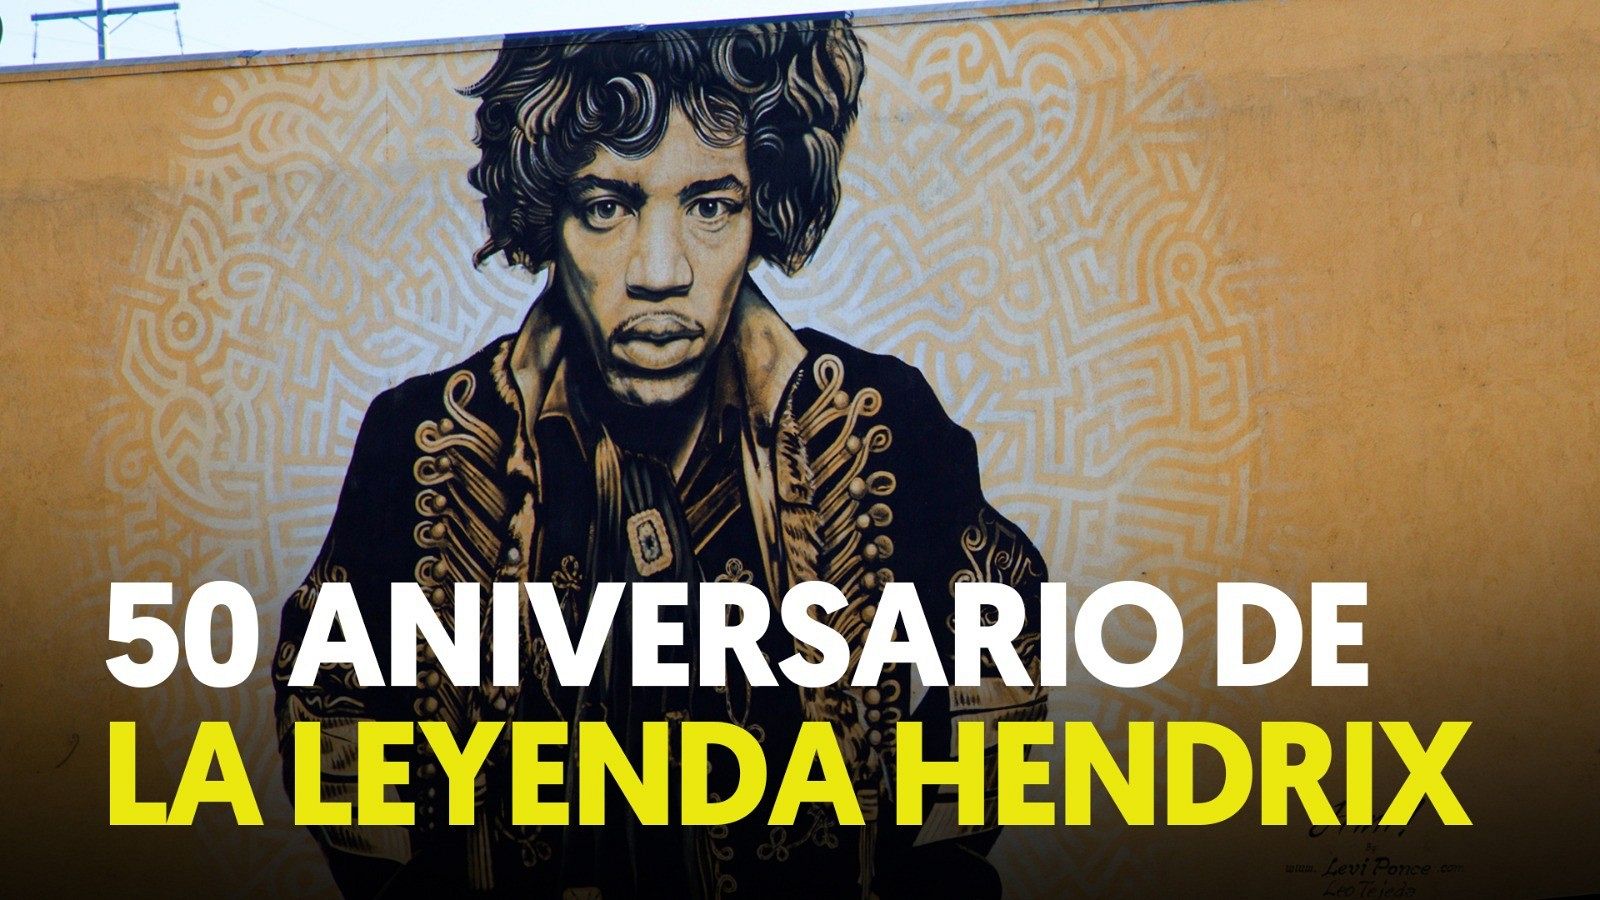 Se cumplen 50 años de la muerte de Jimi Hendrix, considerado el mejor guitarrista de la historia  - RTVE.es